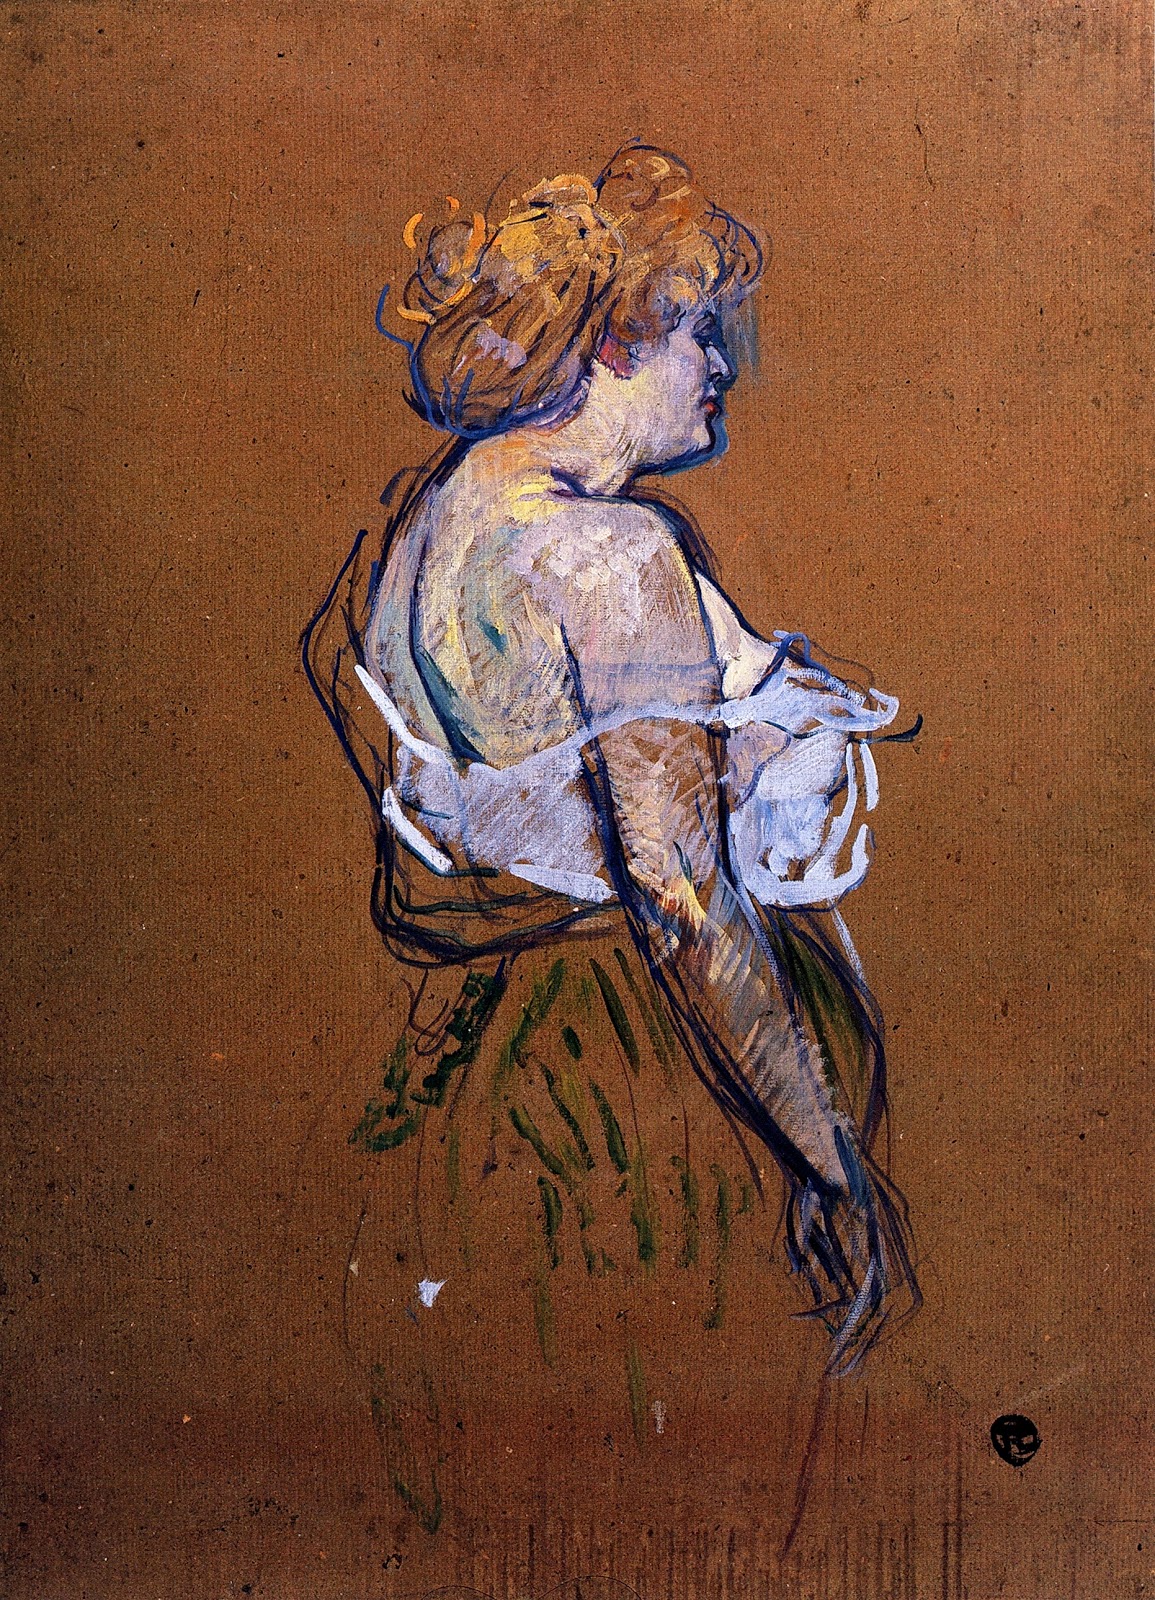 Henri+de+Toulouse+Lautrec-1864-1901 (75).jpg